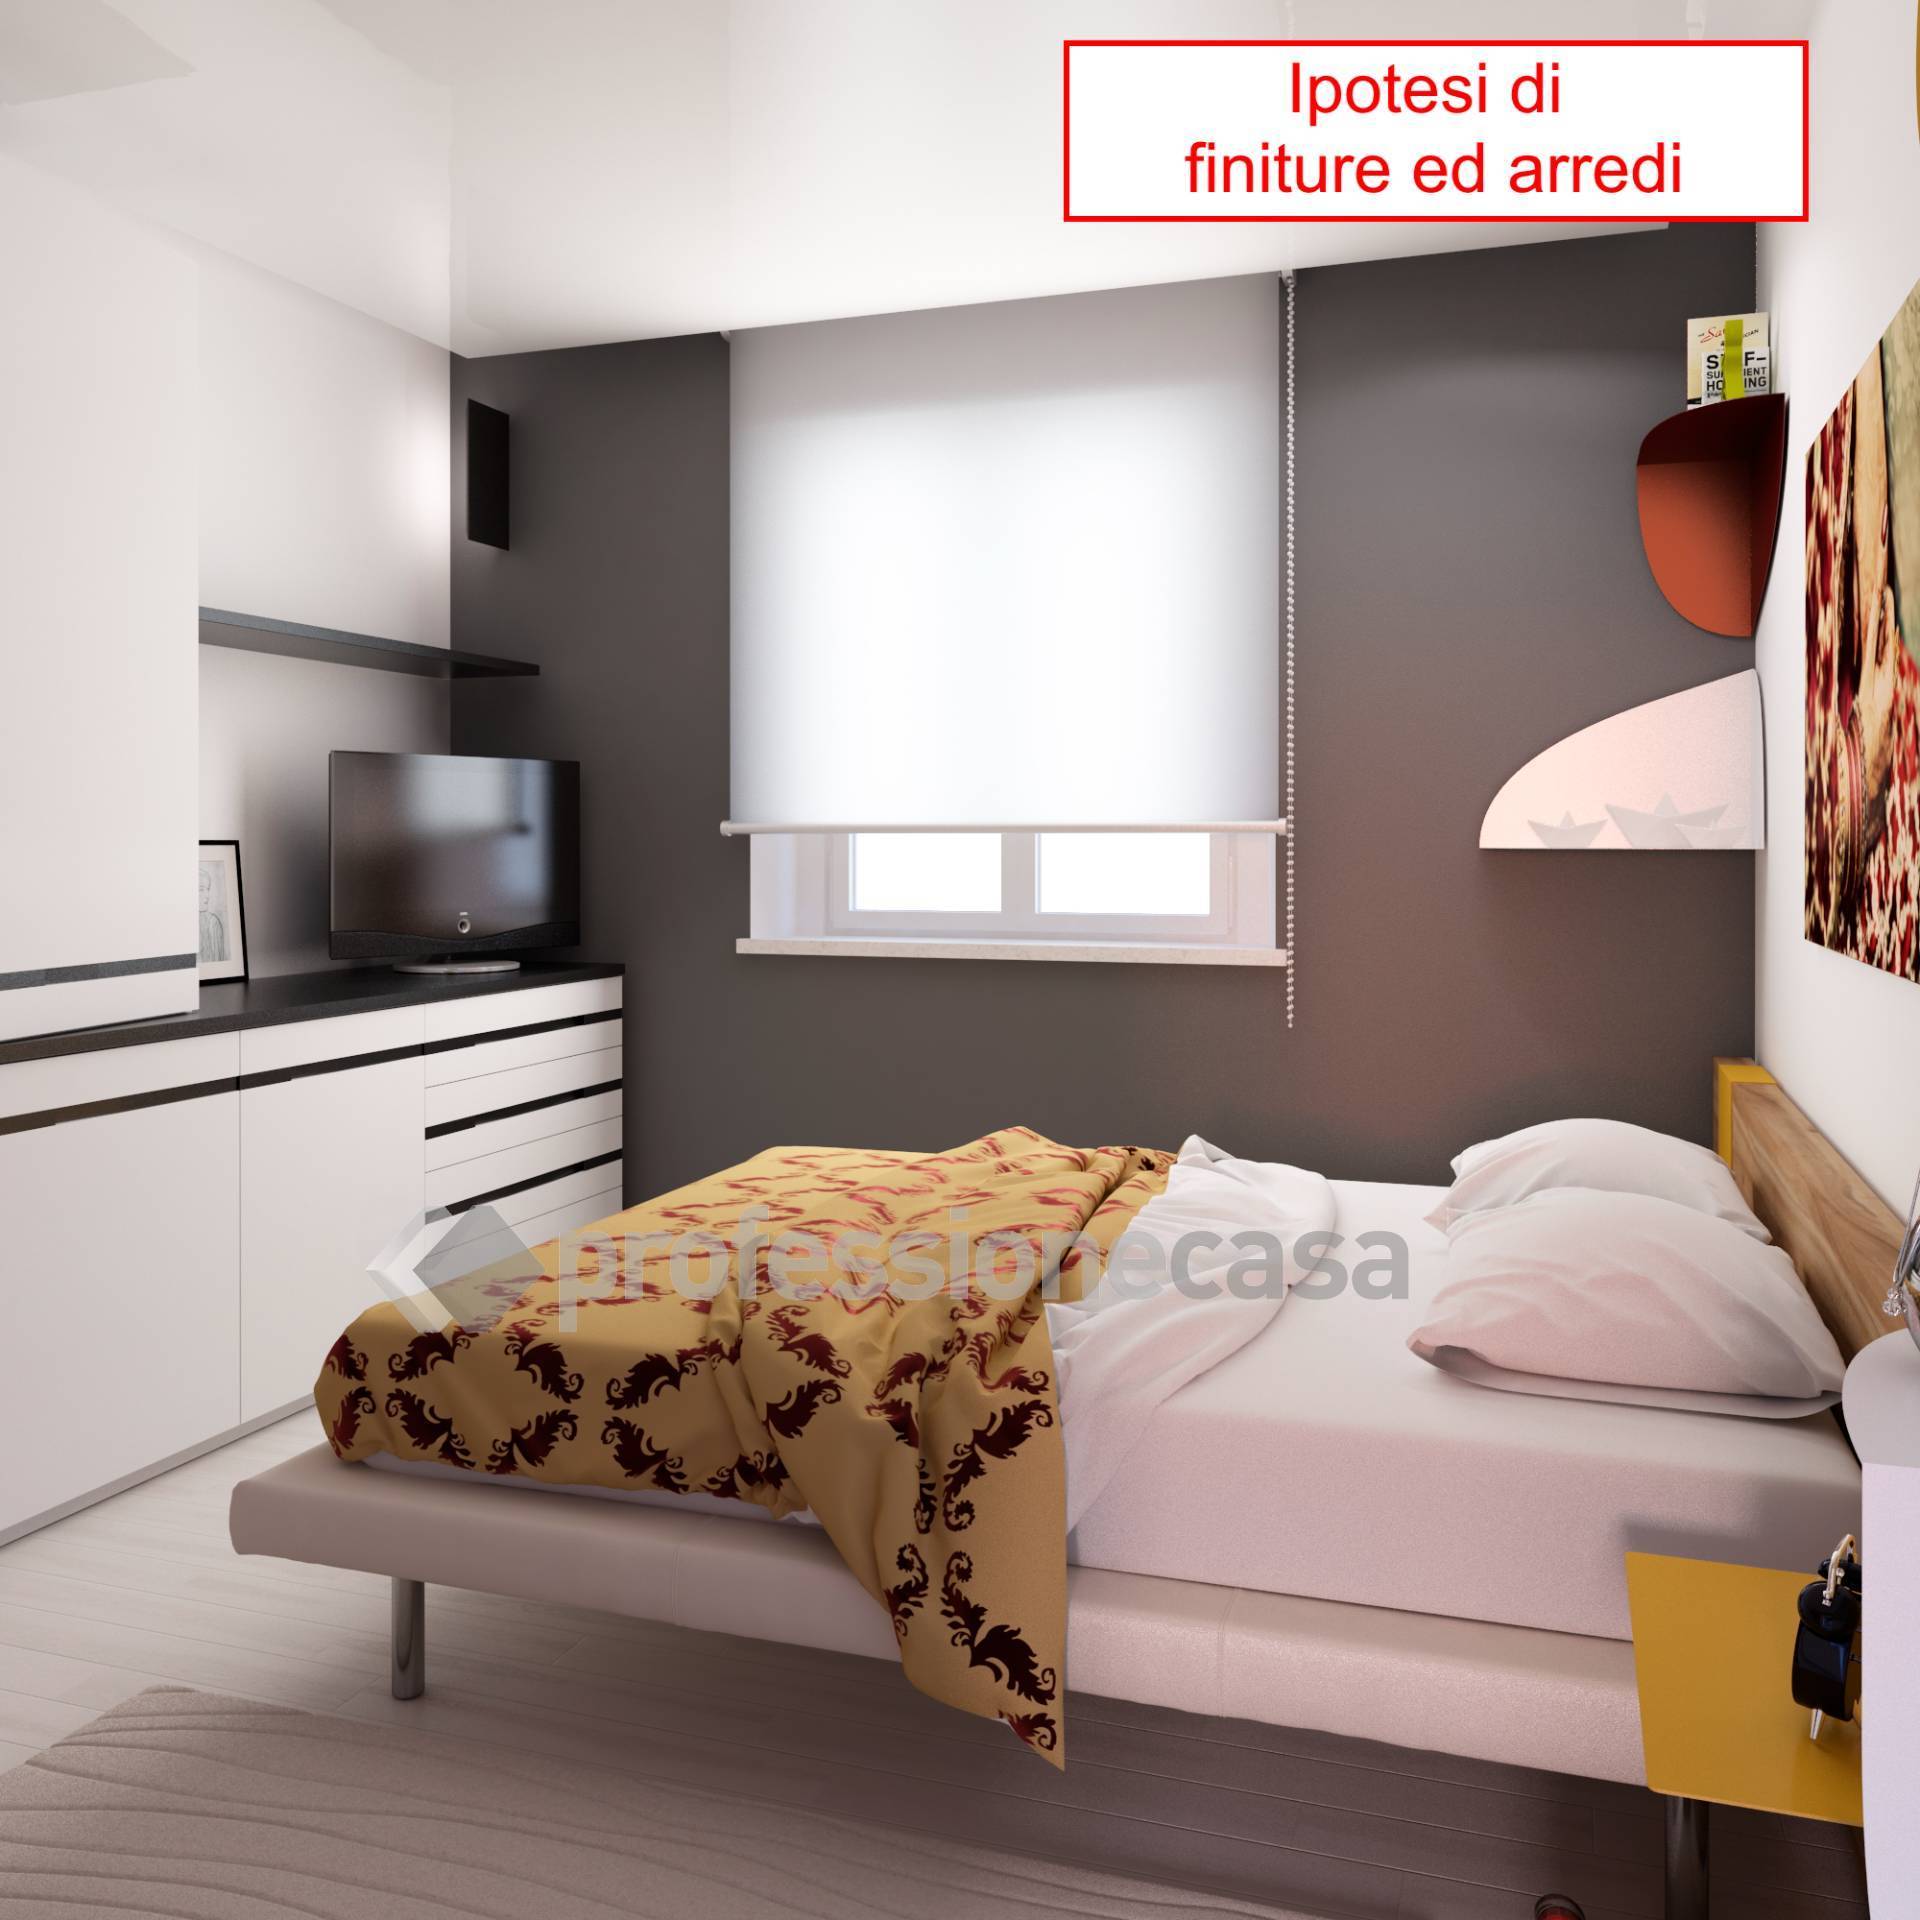 Appartamento in vendita a Porto Sant'Elpidio, 3 locali, zona Località: Mare, prezzo € 220.000 | PortaleAgenzieImmobiliari.it